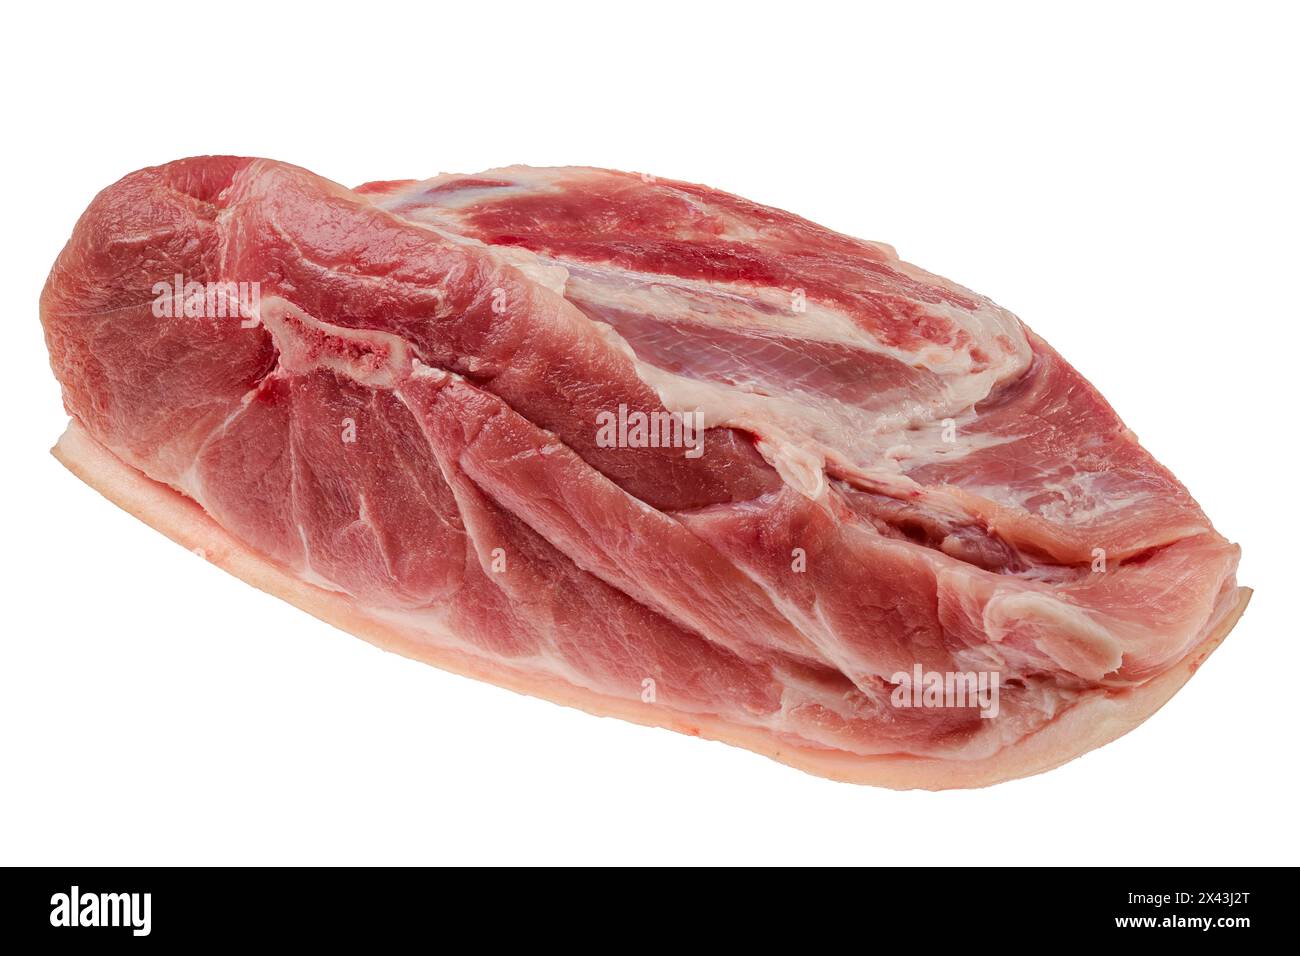 Spalla di maiale cruda fresca isolata su sfondo bianco Foto Stock